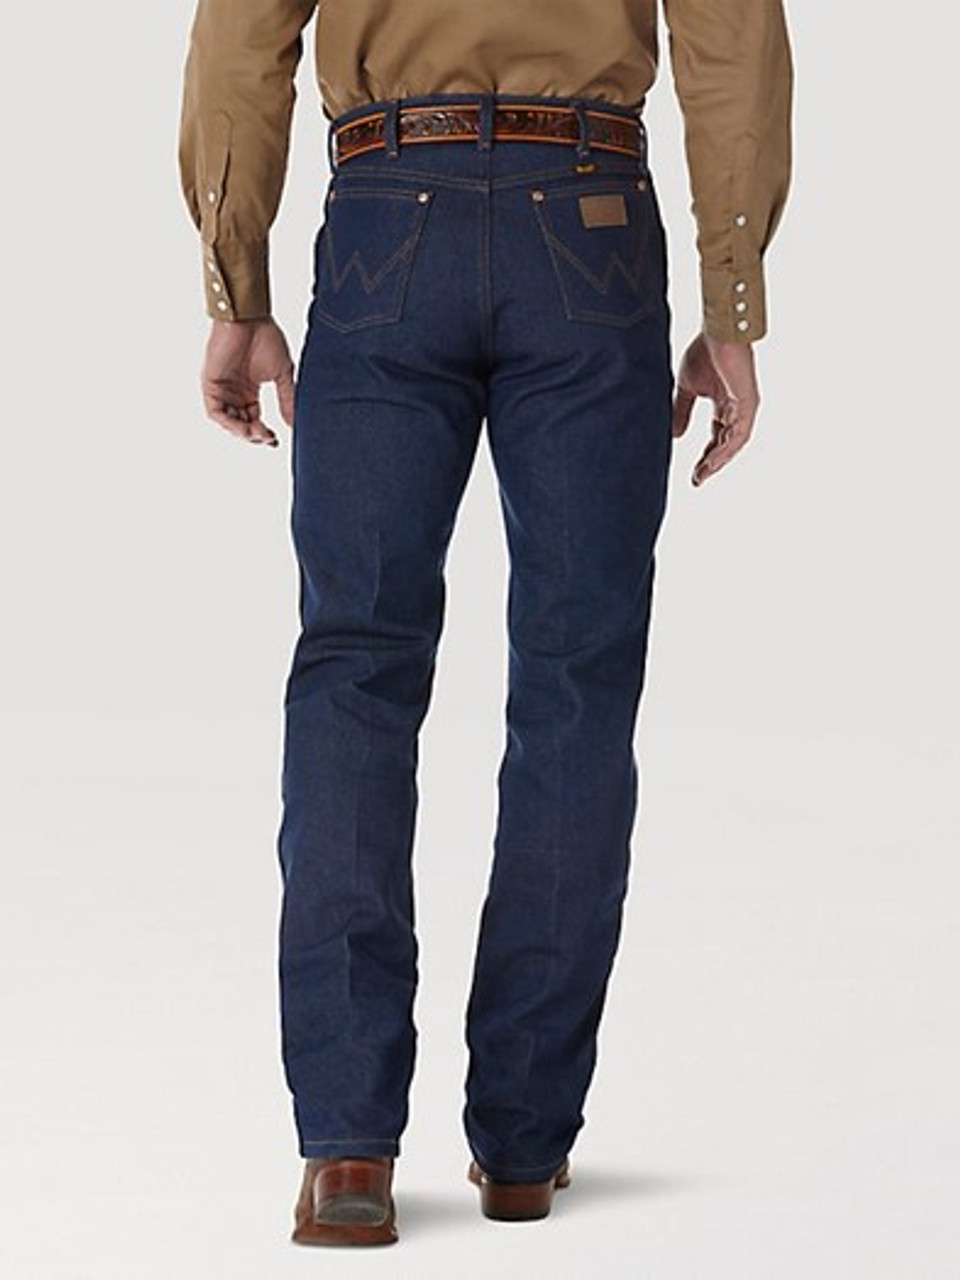 Wrangler cowboy cut jeans - Jeans